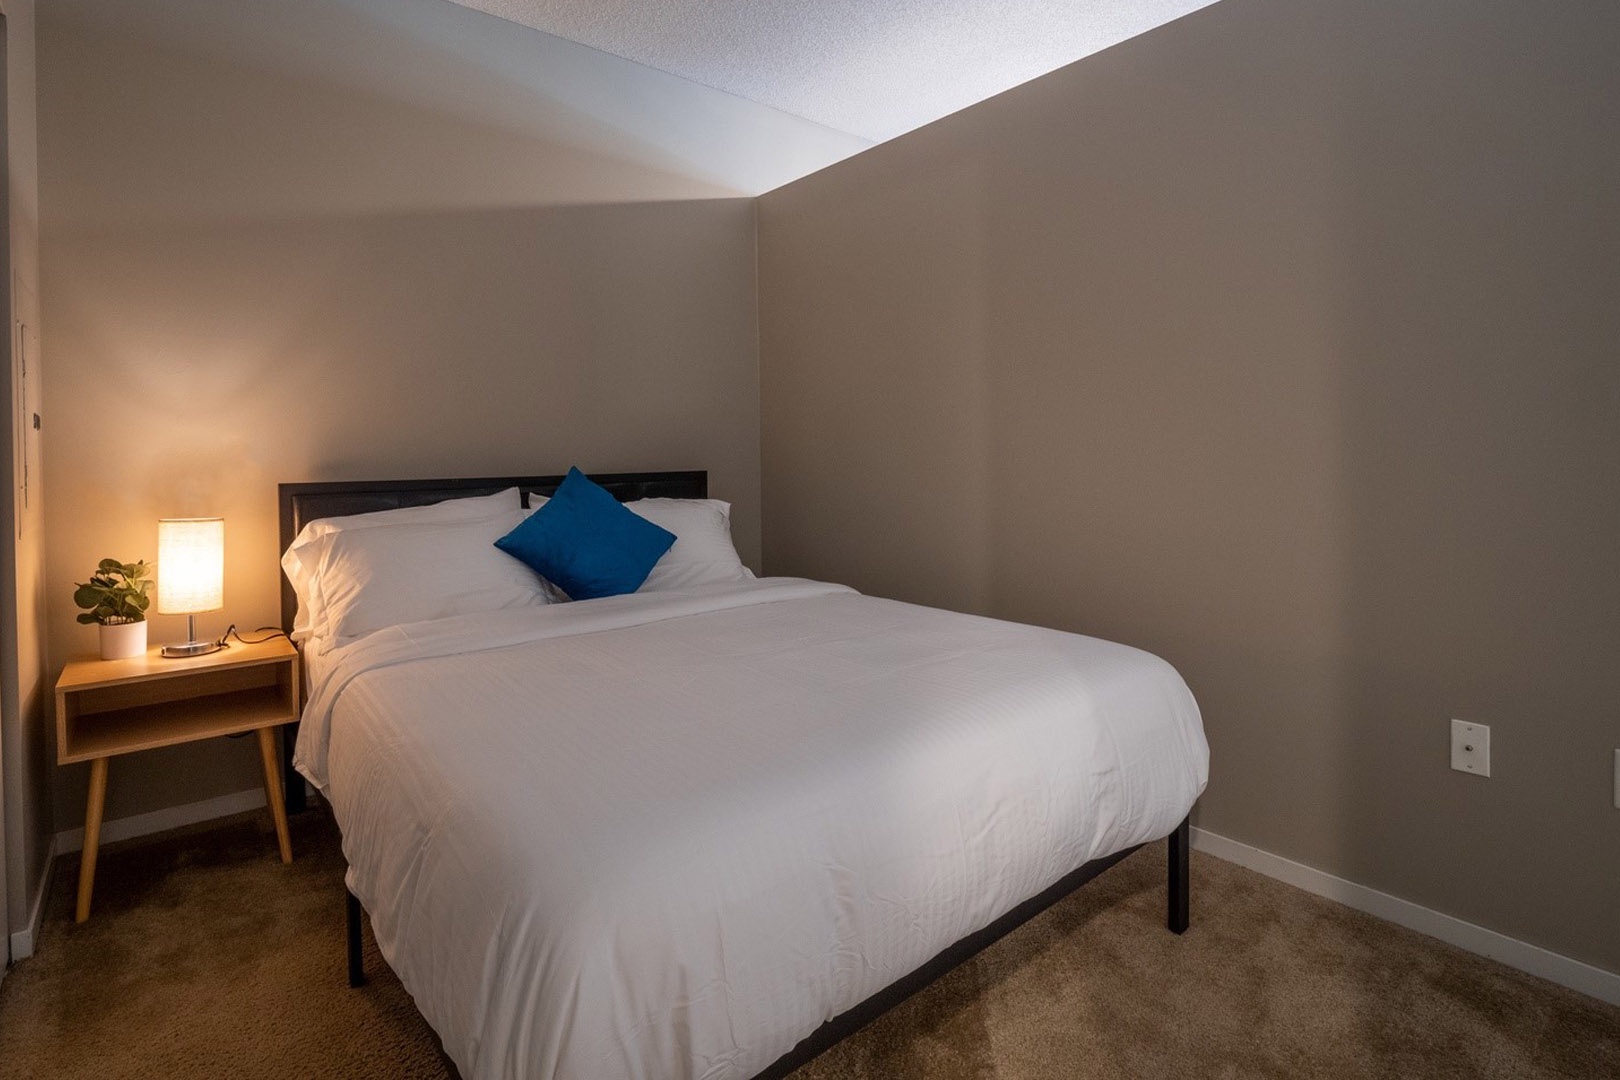 Restful Serenity: Unwind in the Comfort of this Cozy Bedroom